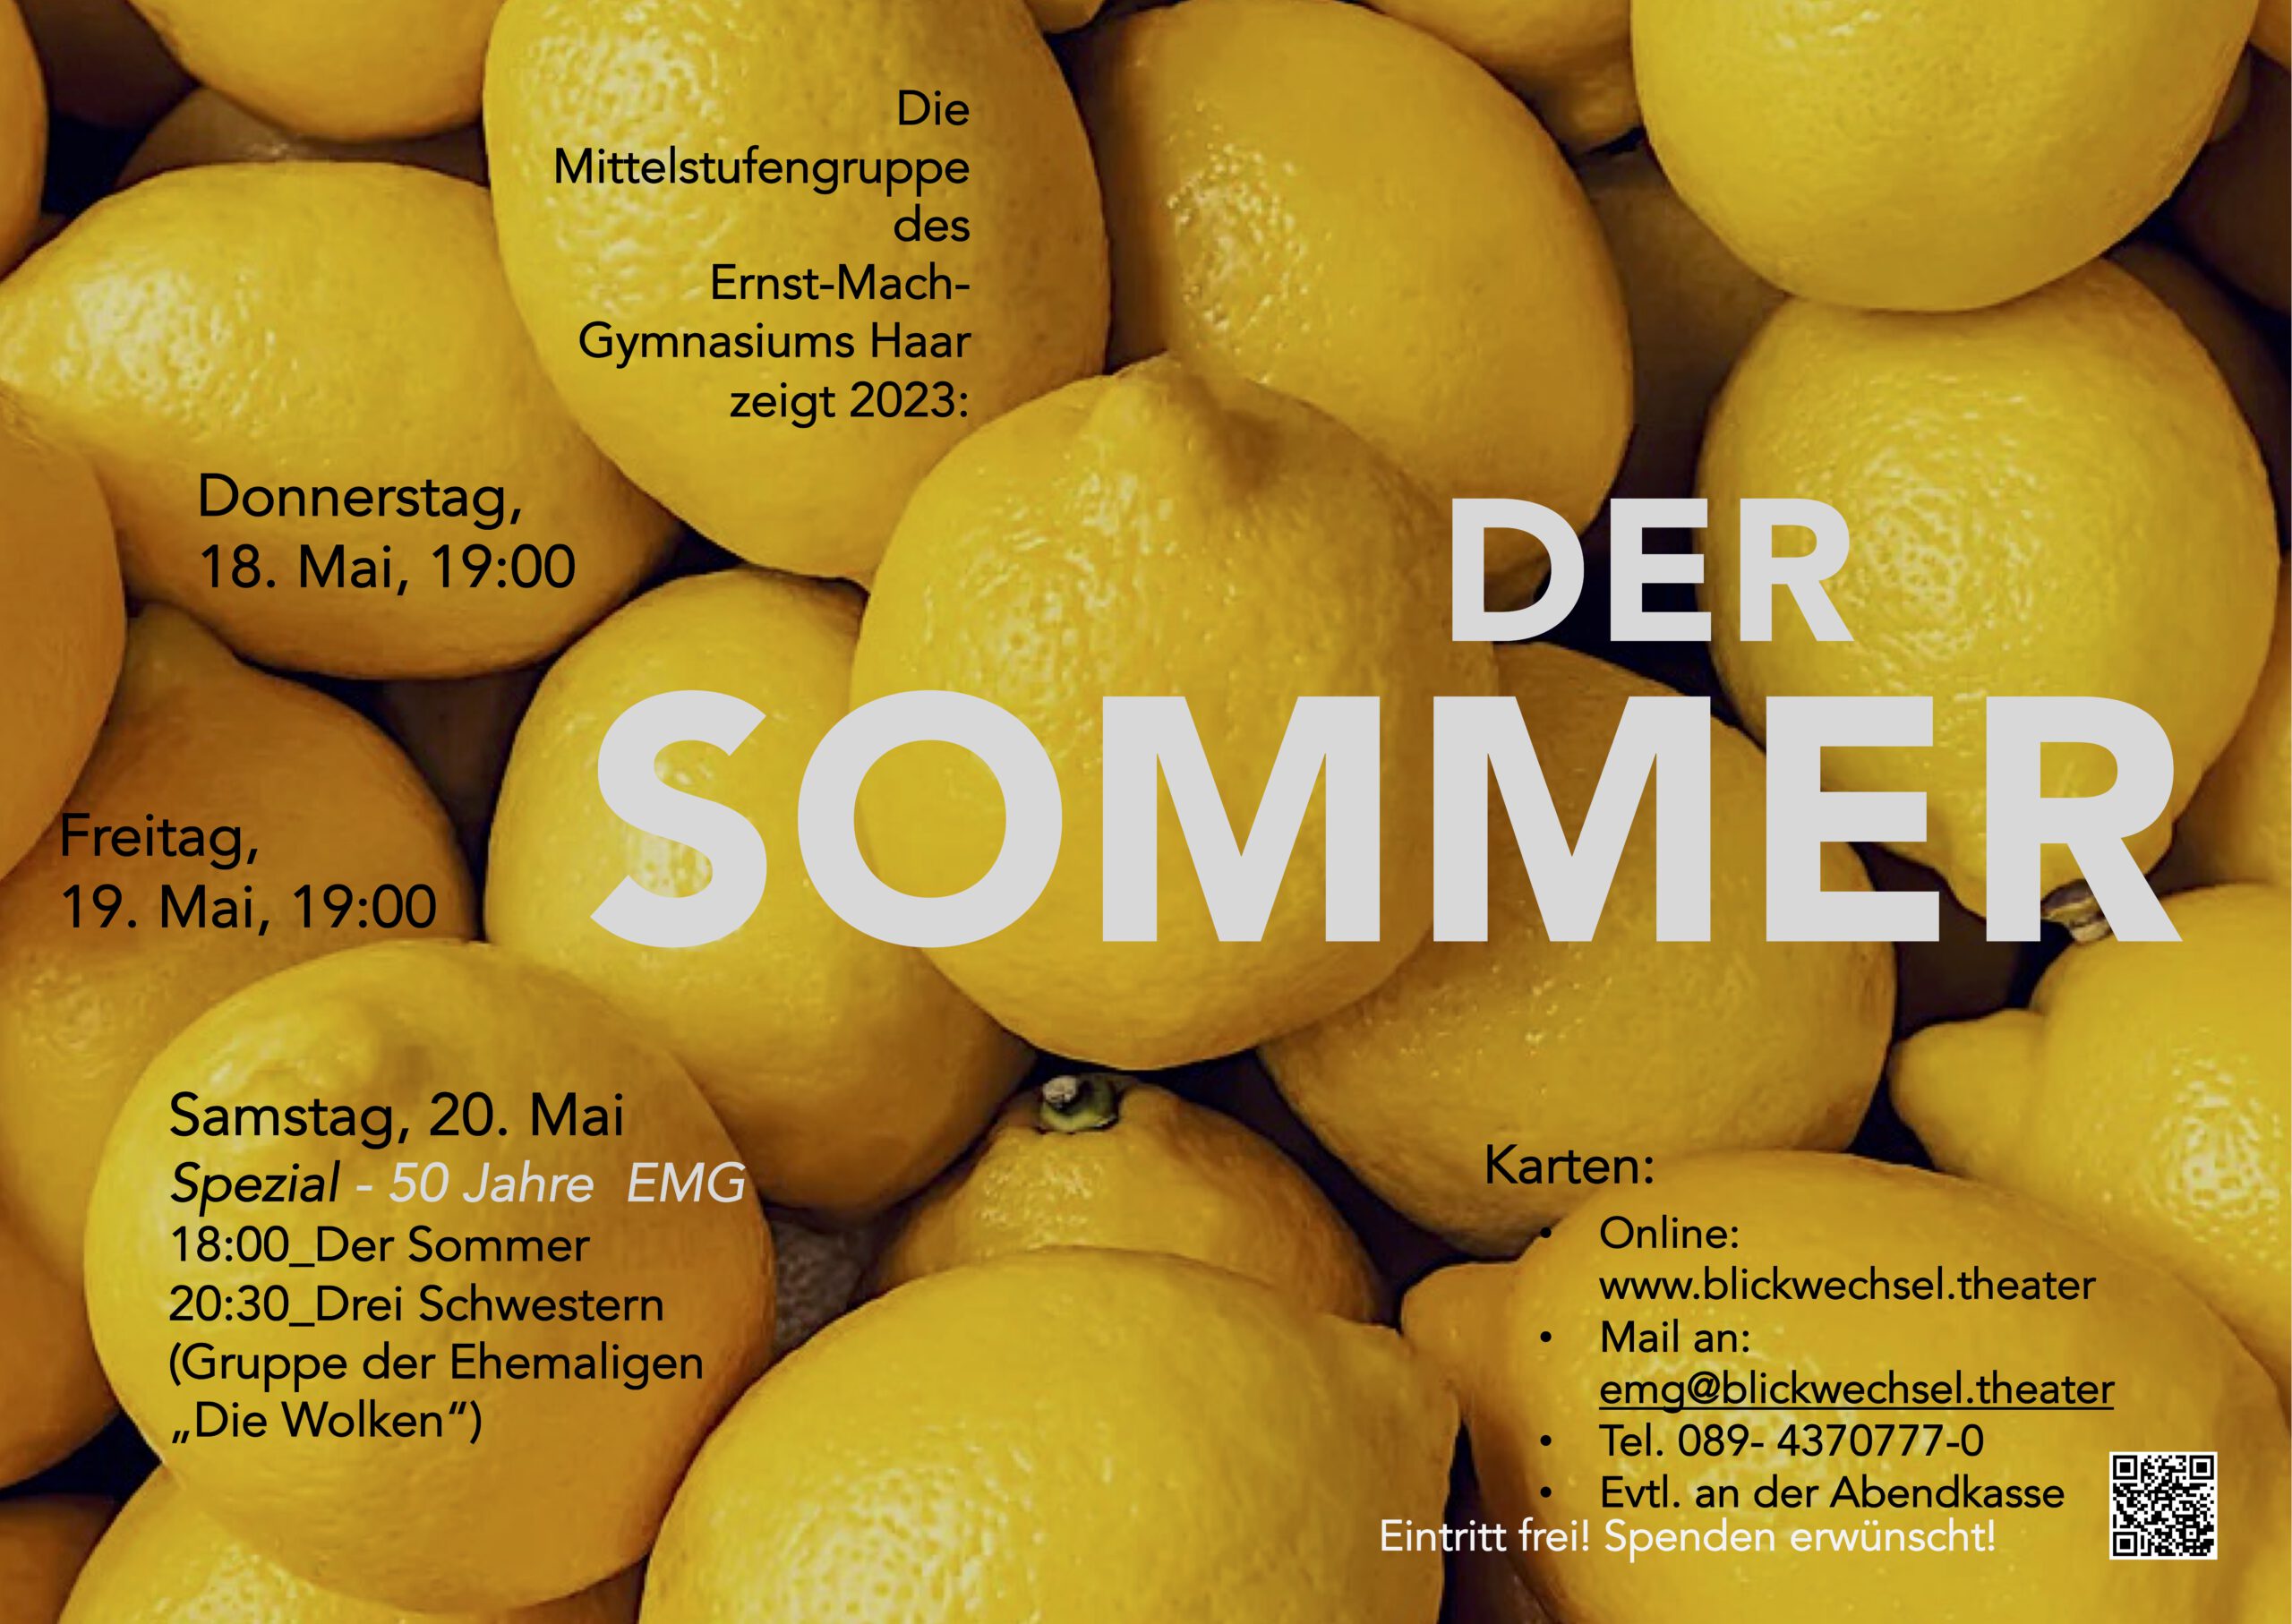 Theaternacht am EMG "Ein Sommer" und "Drei Schwestern" - Theater der Mittelstufengruppe / Die Wolken am Samstag, 20.5.23